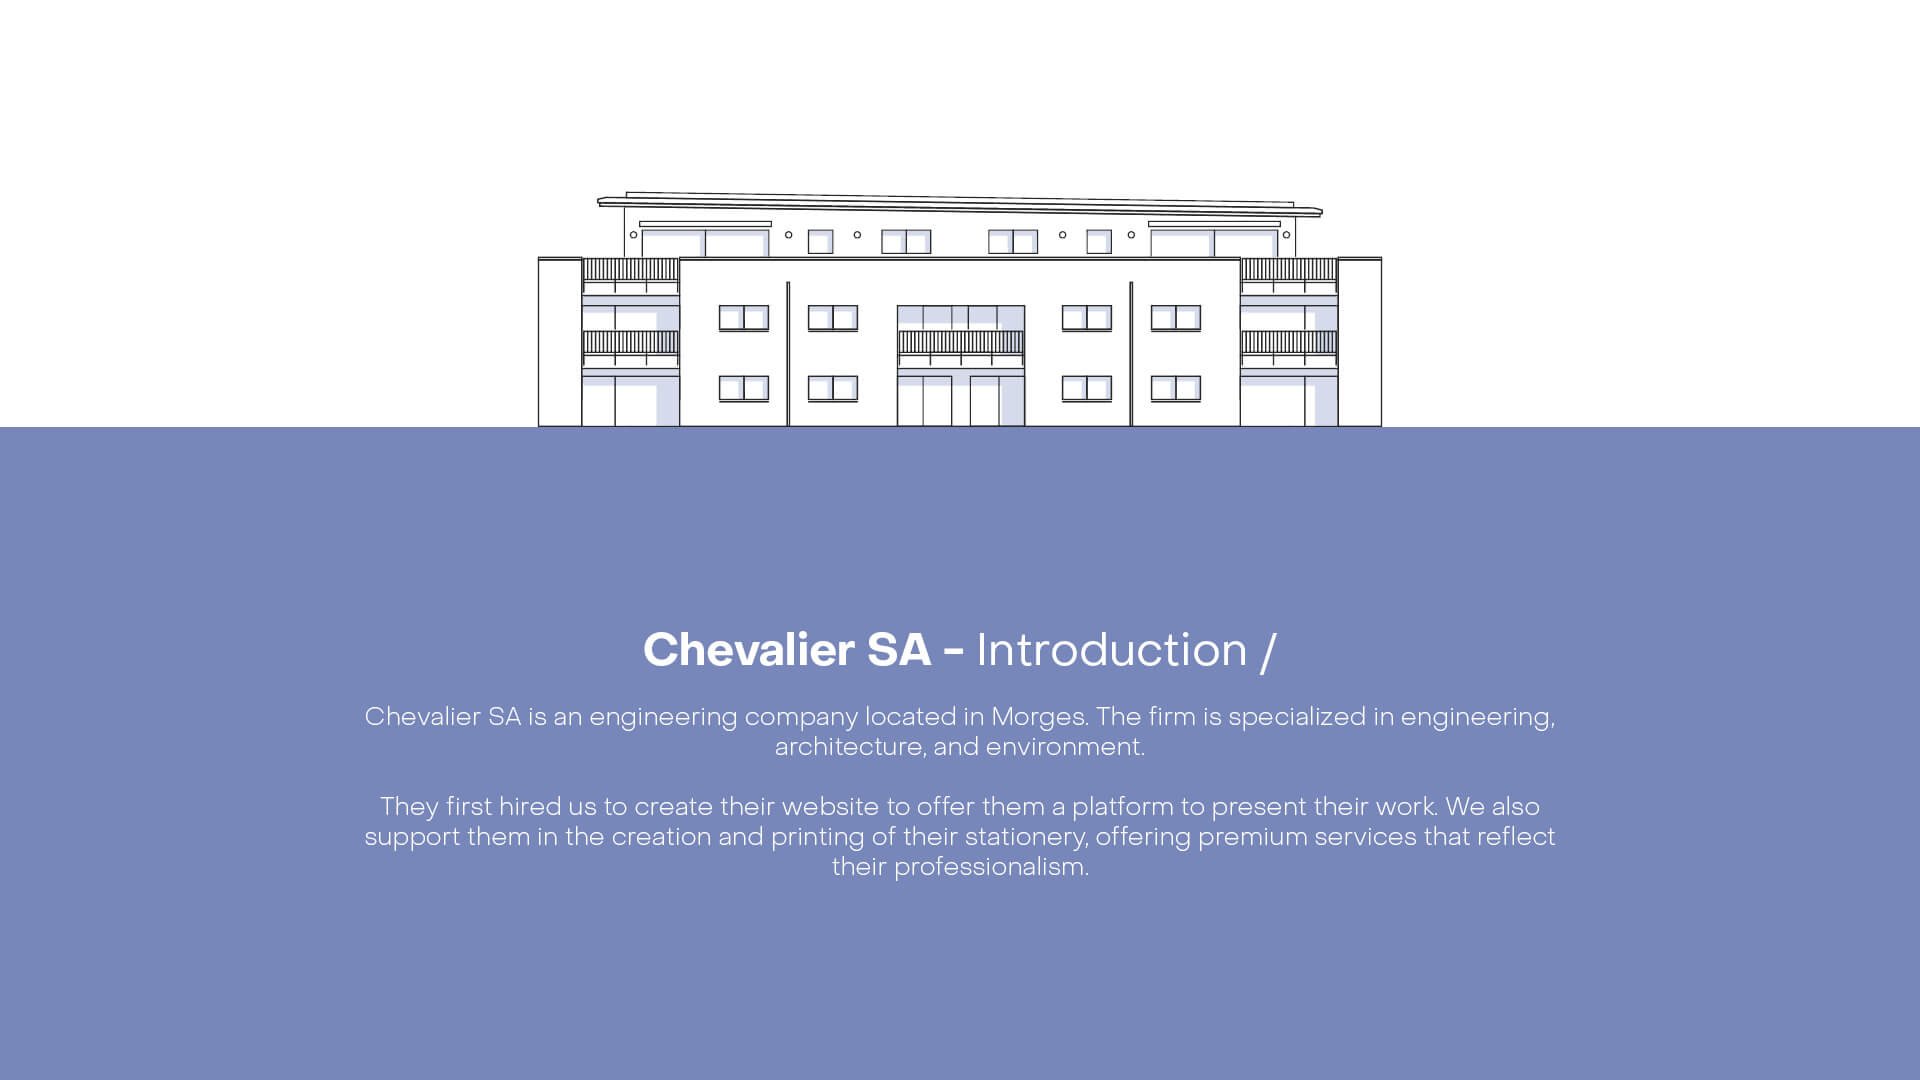 Chevalier - Présentation Behance2.jpg